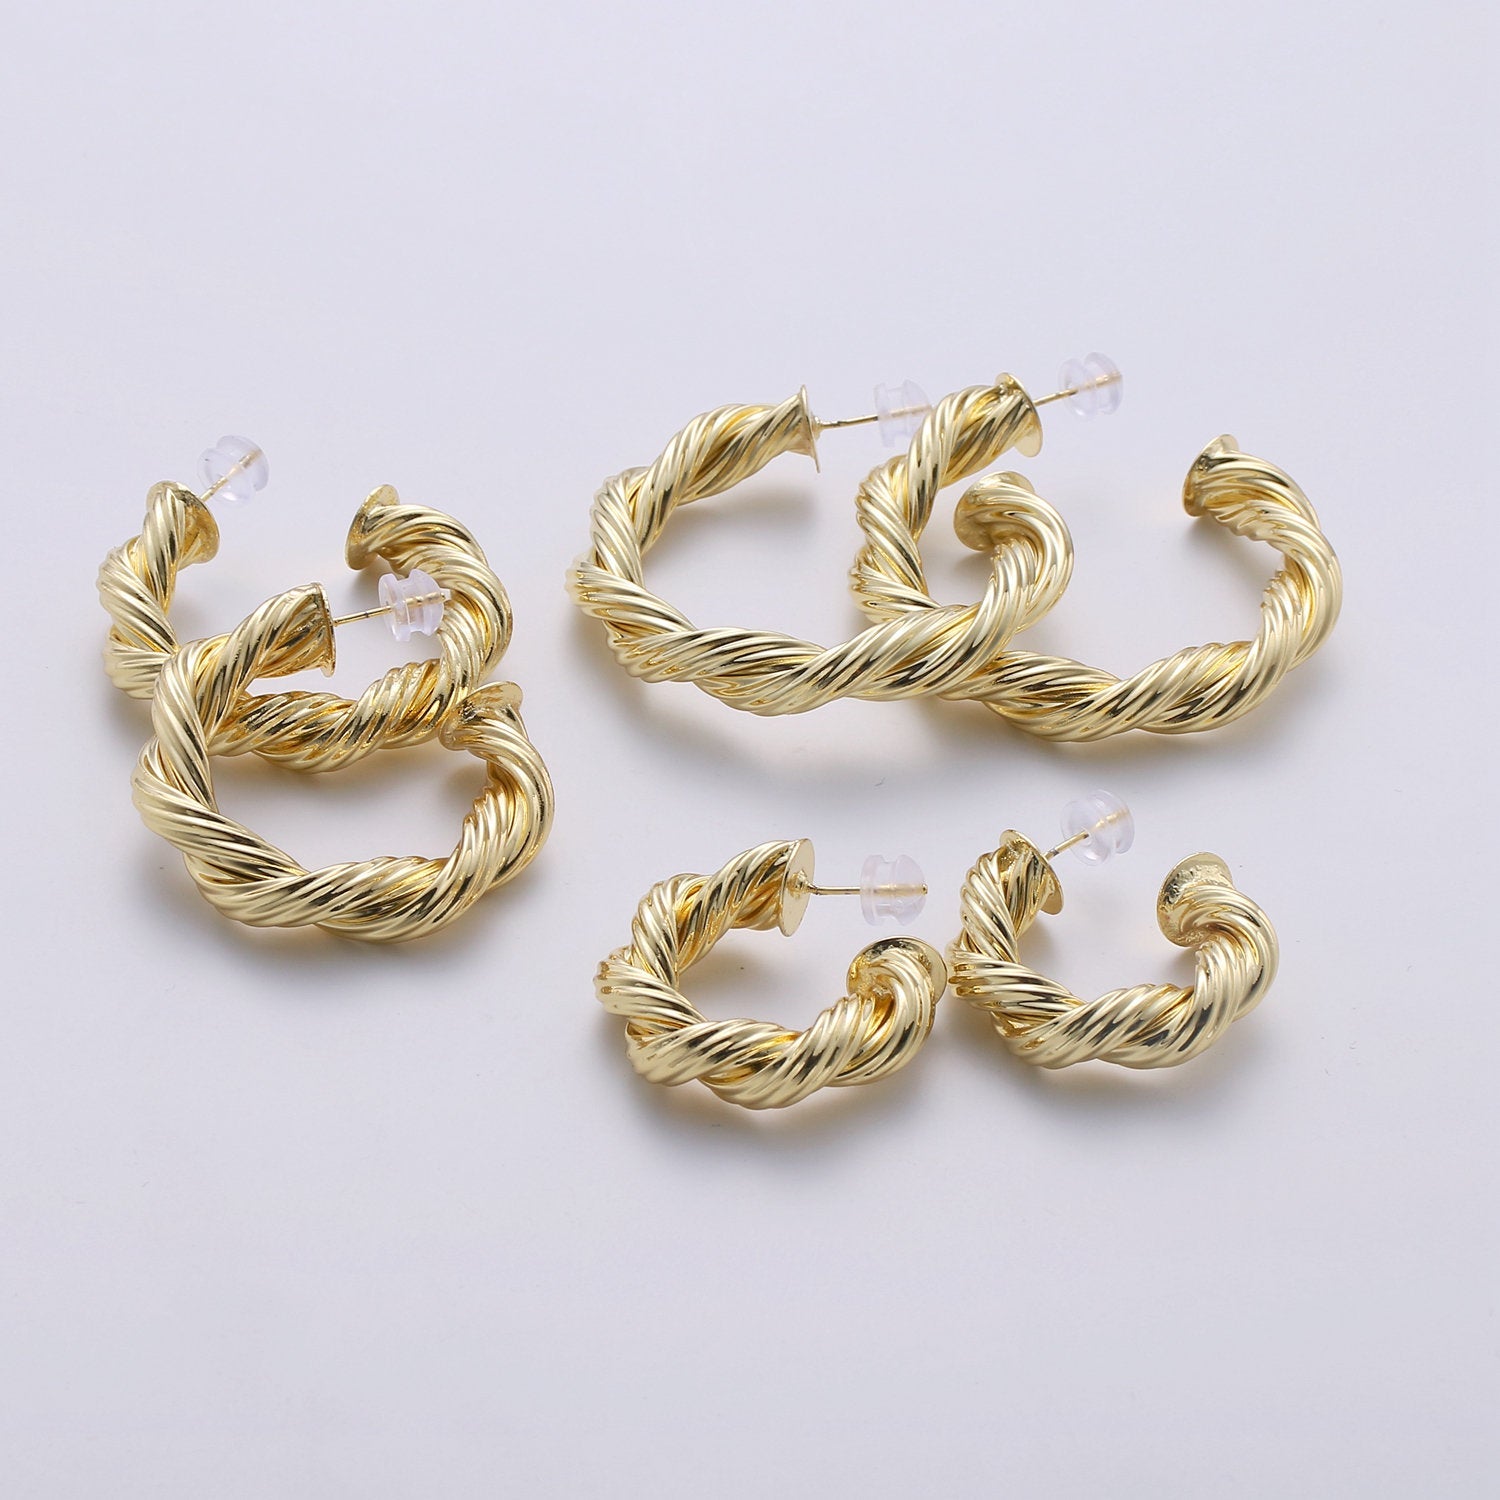 Gold Hoop Earrings, Small tube Hoop Earrings, Medium Twisted Hoop Earrings, chunky Gold Hoop Earrings, Thick 14k Gold Filled Hoop Earrings - DLUXCA